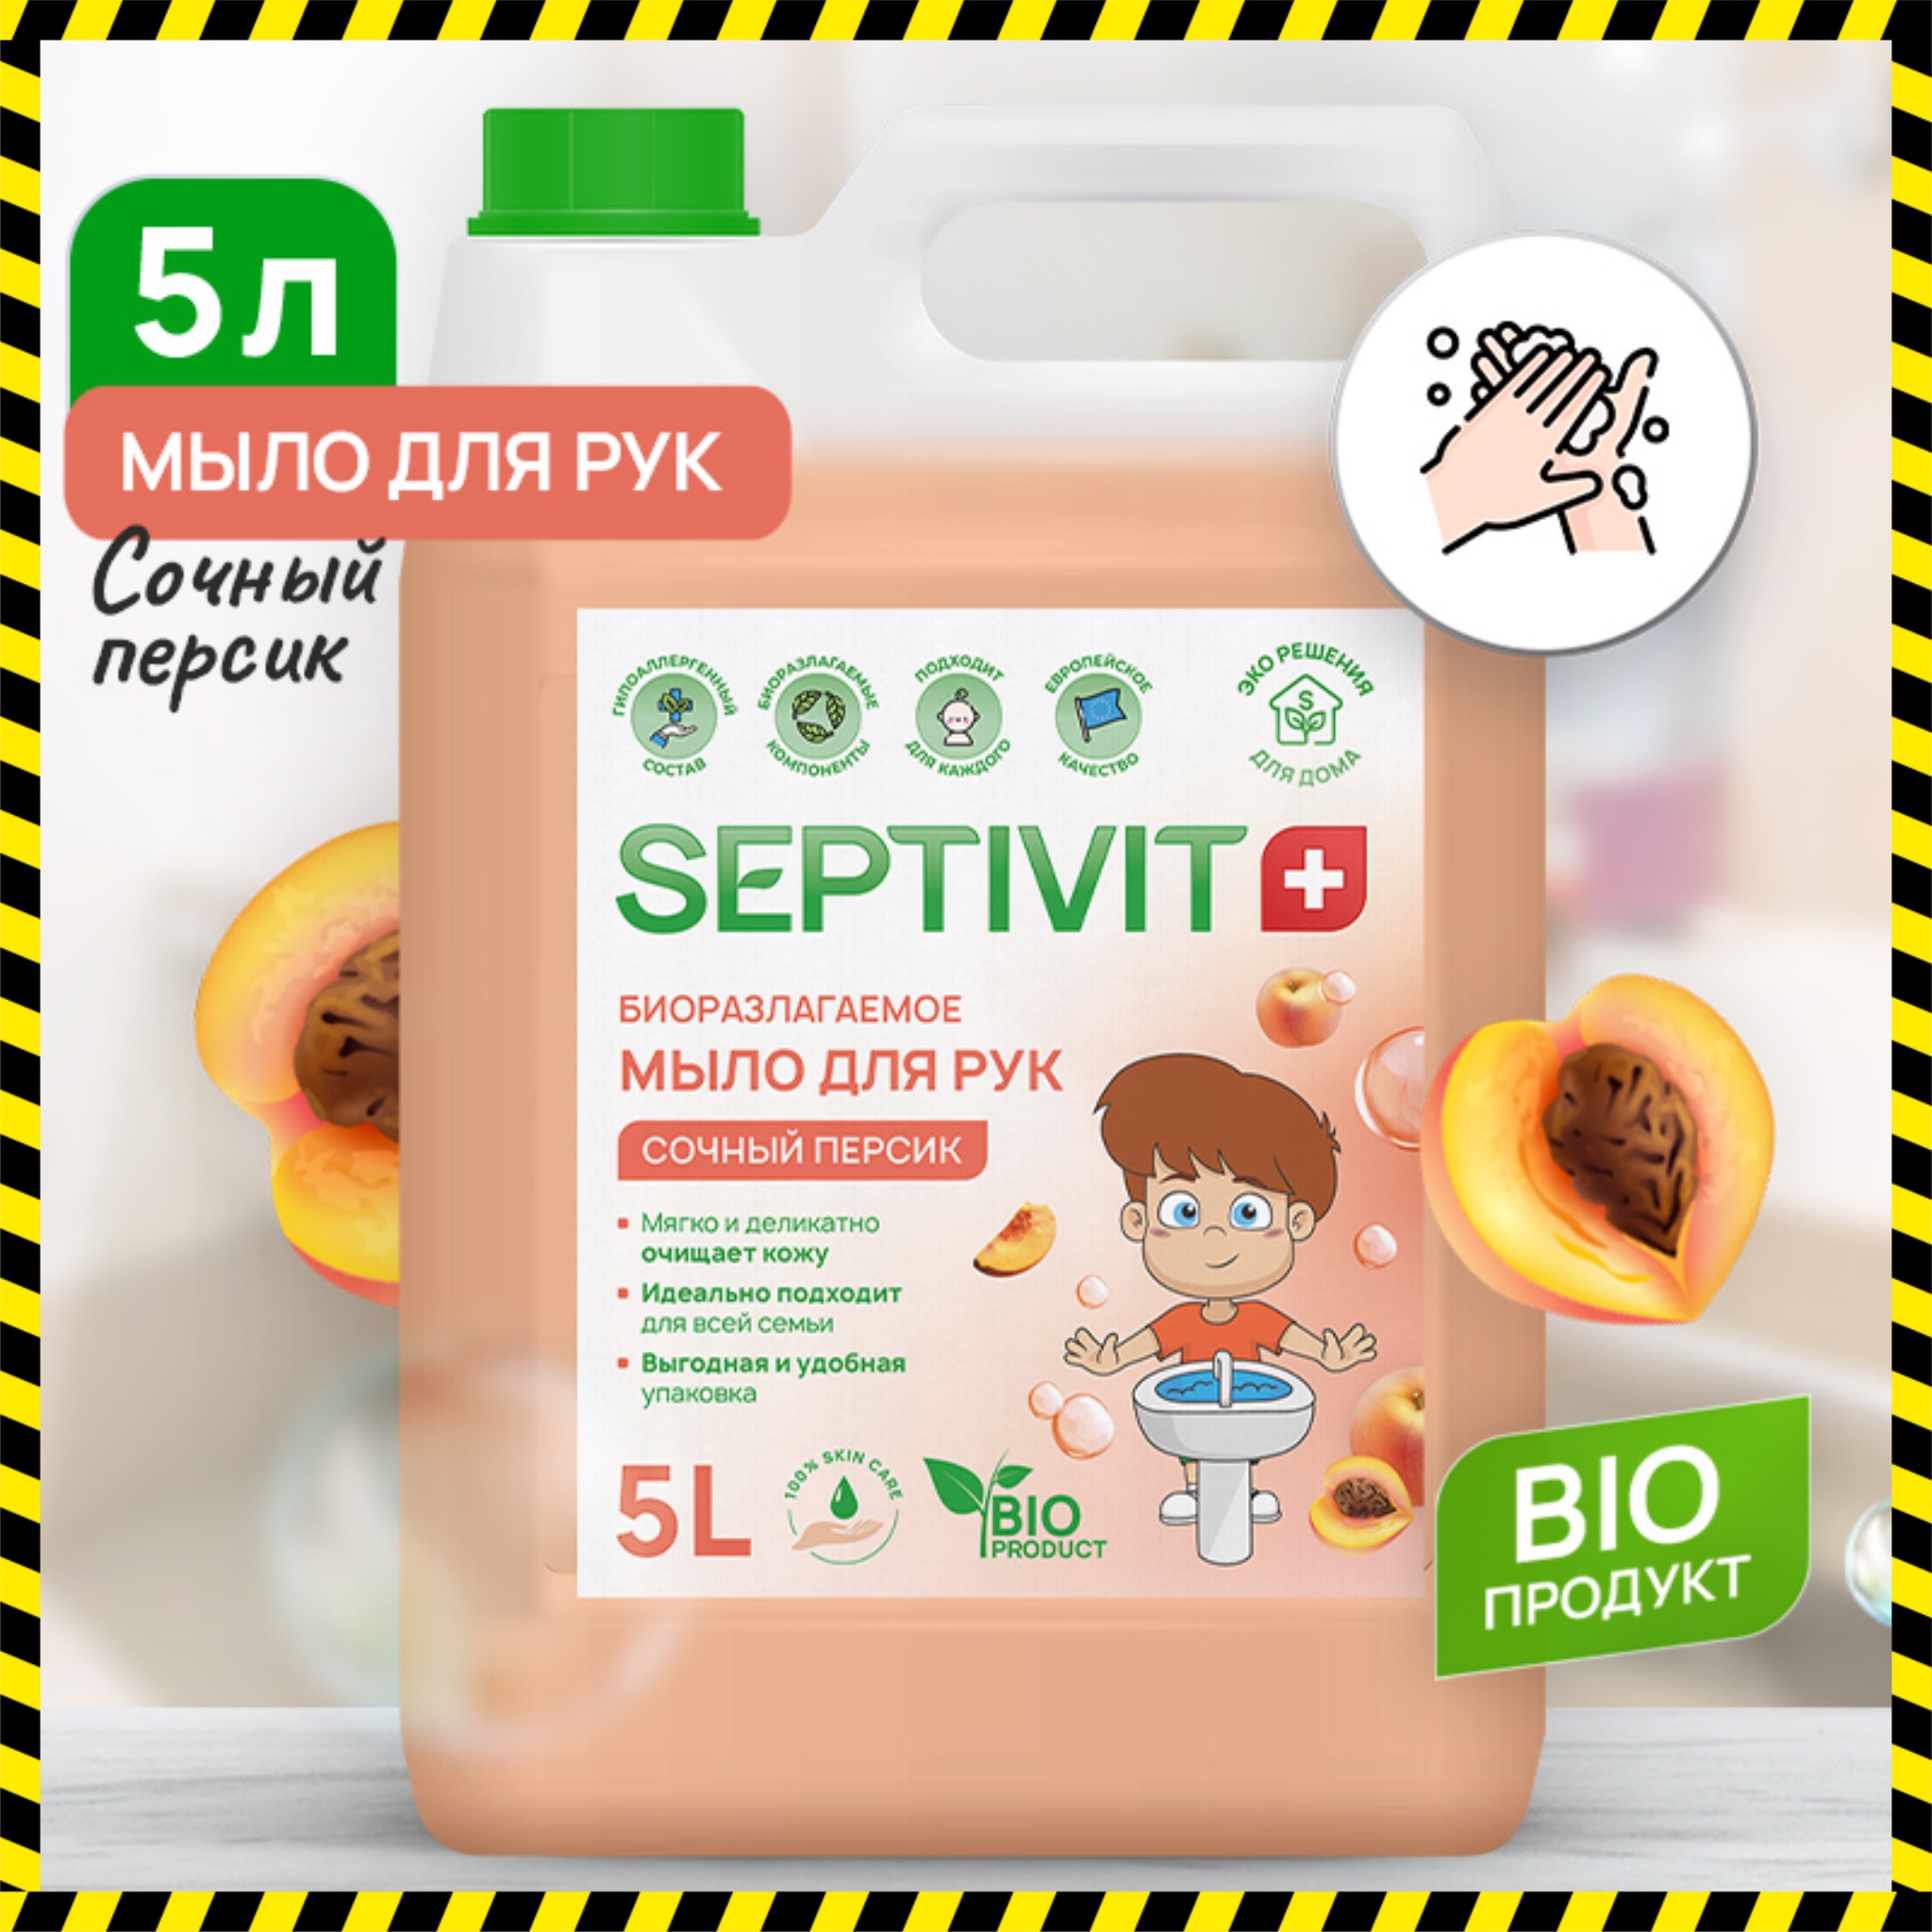 Жидкое мыло для рук Сочный персик Septivit Premium 5л